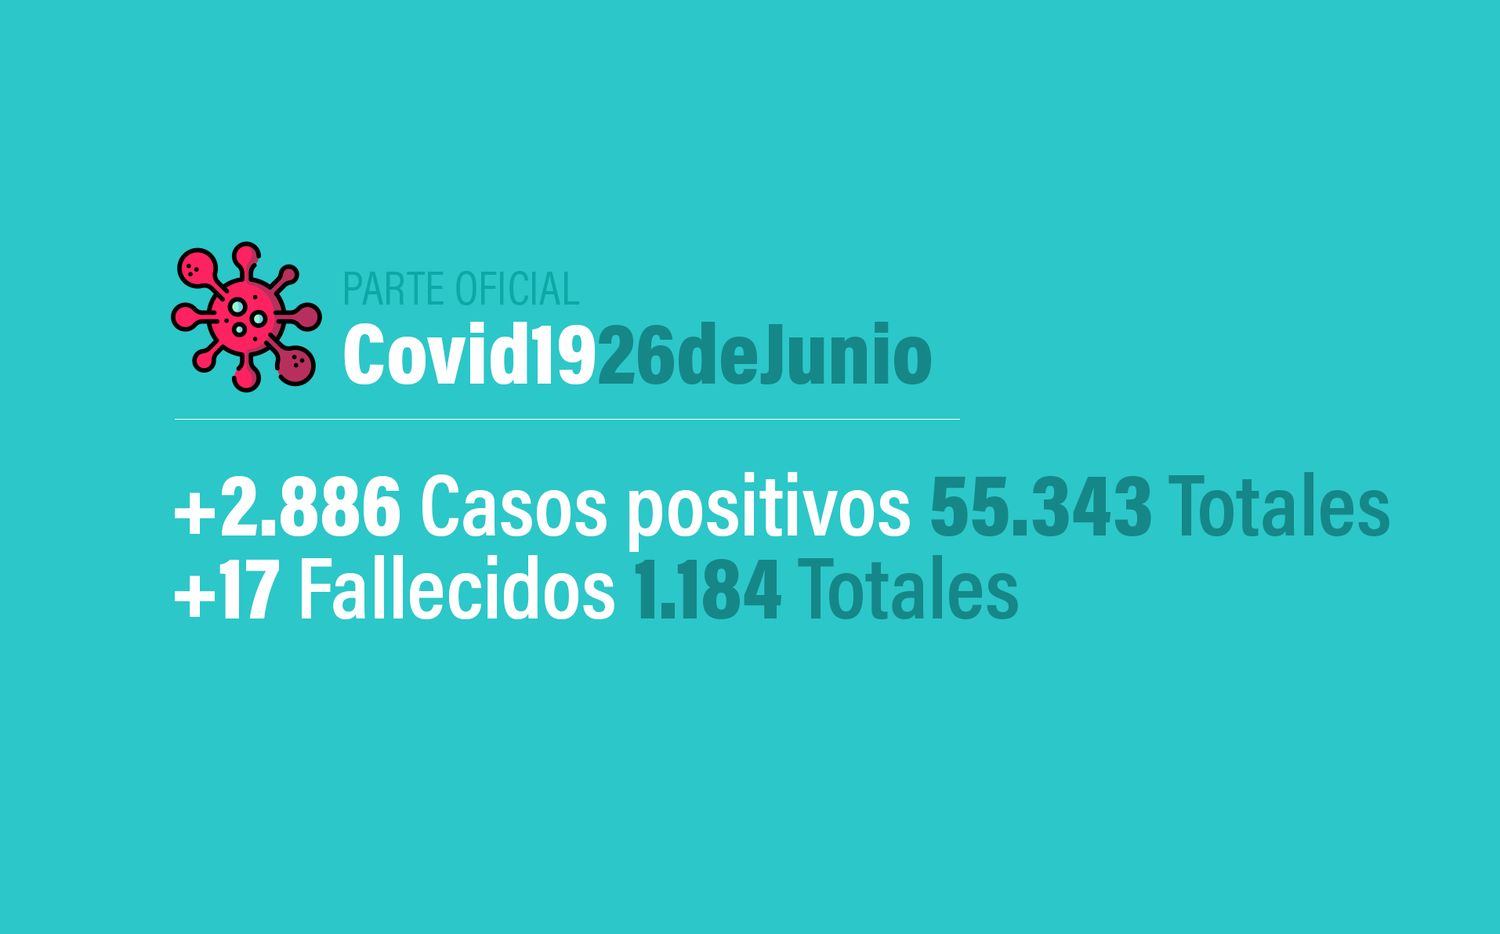 Coronavirus en Argentina: 2886 nuevos casos, 55343 confirmados, 18416 recuperados y 1184 muertes, al 26 de junio